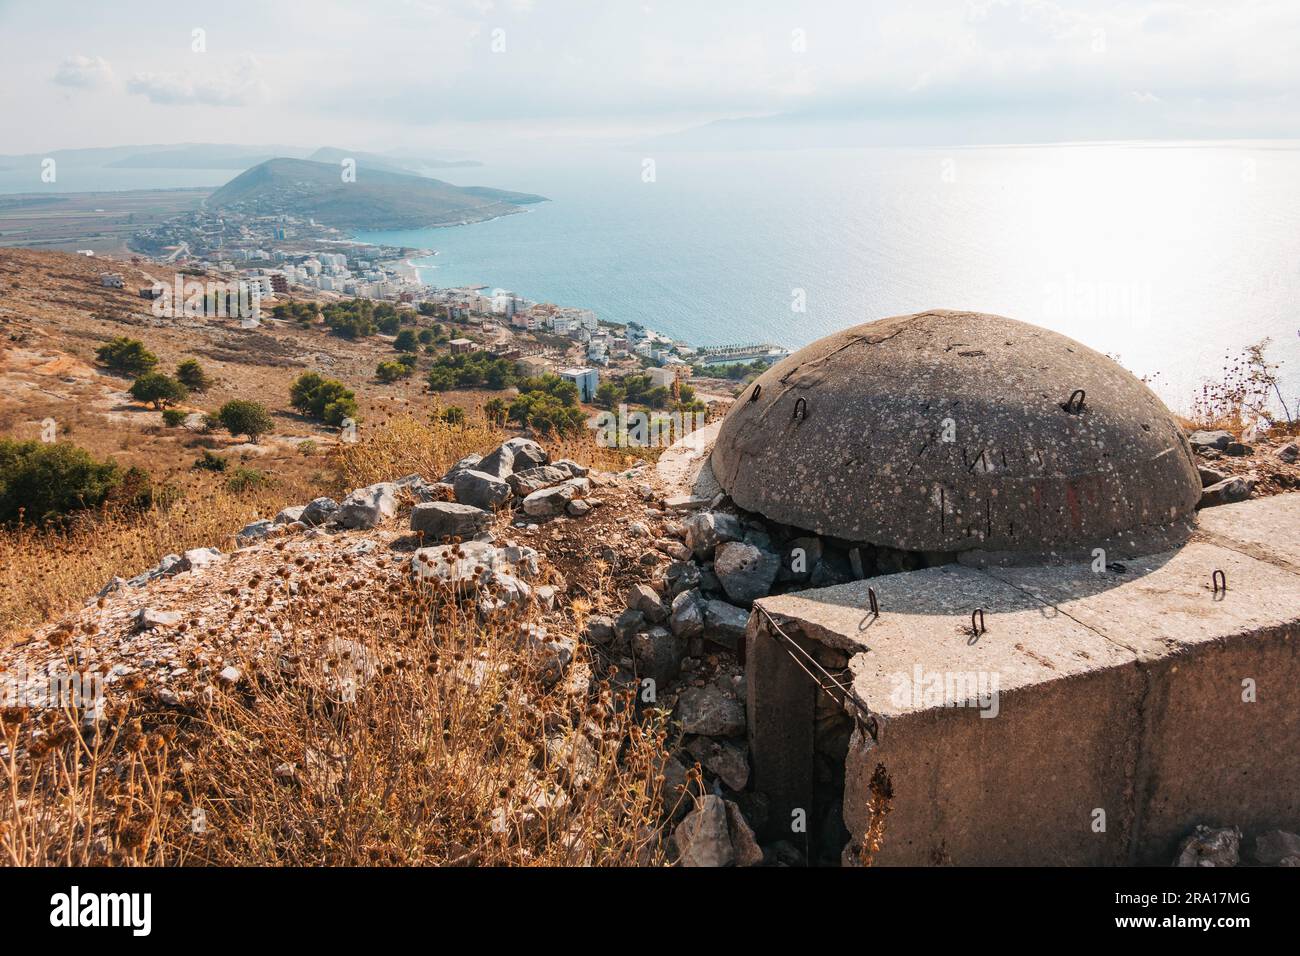 Un bunker di cemento dell'epoca comunista sulla cima di una collina a Sarandë, nell'Albania meridionale Foto Stock